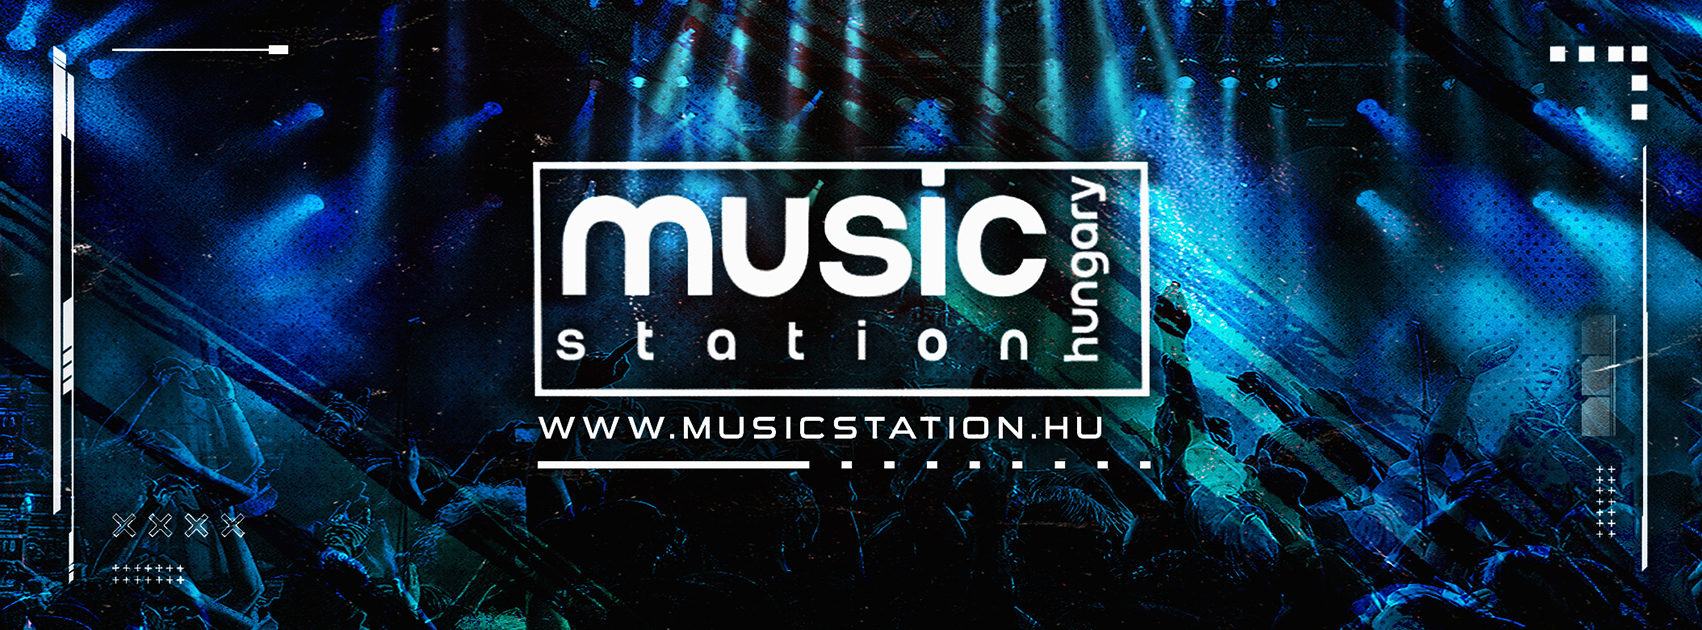 Ha szereted a technot, akkor ez a rádió neked való! – Music Station Hungary